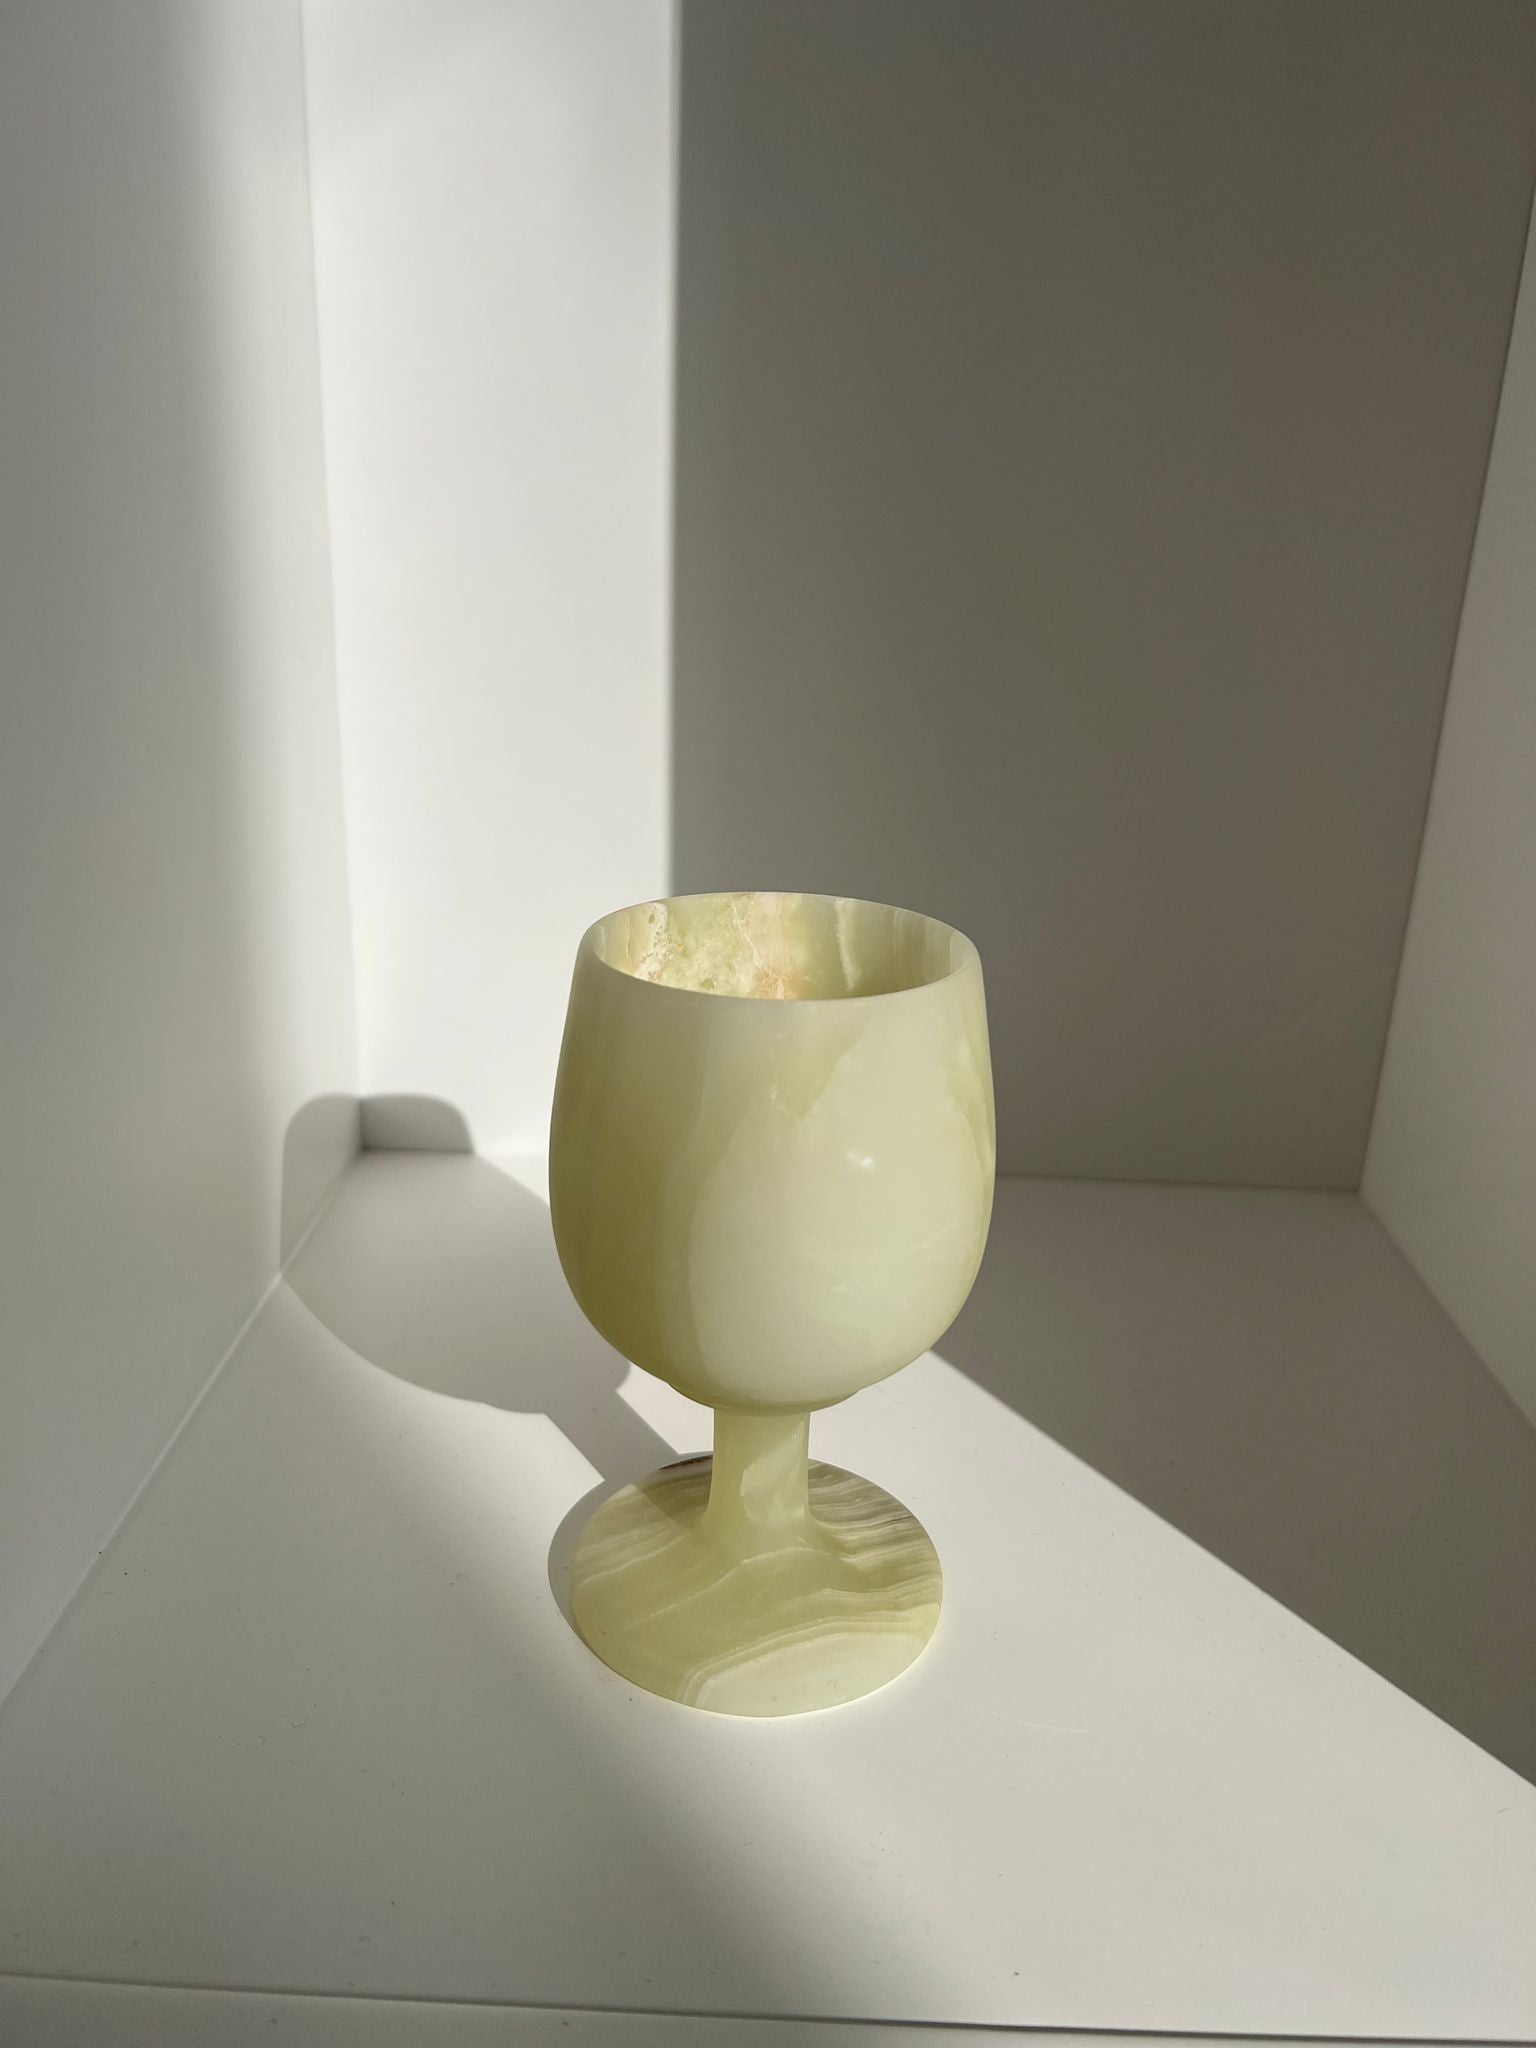 Duo de verres en pierre dure vert clair H:12,5cm